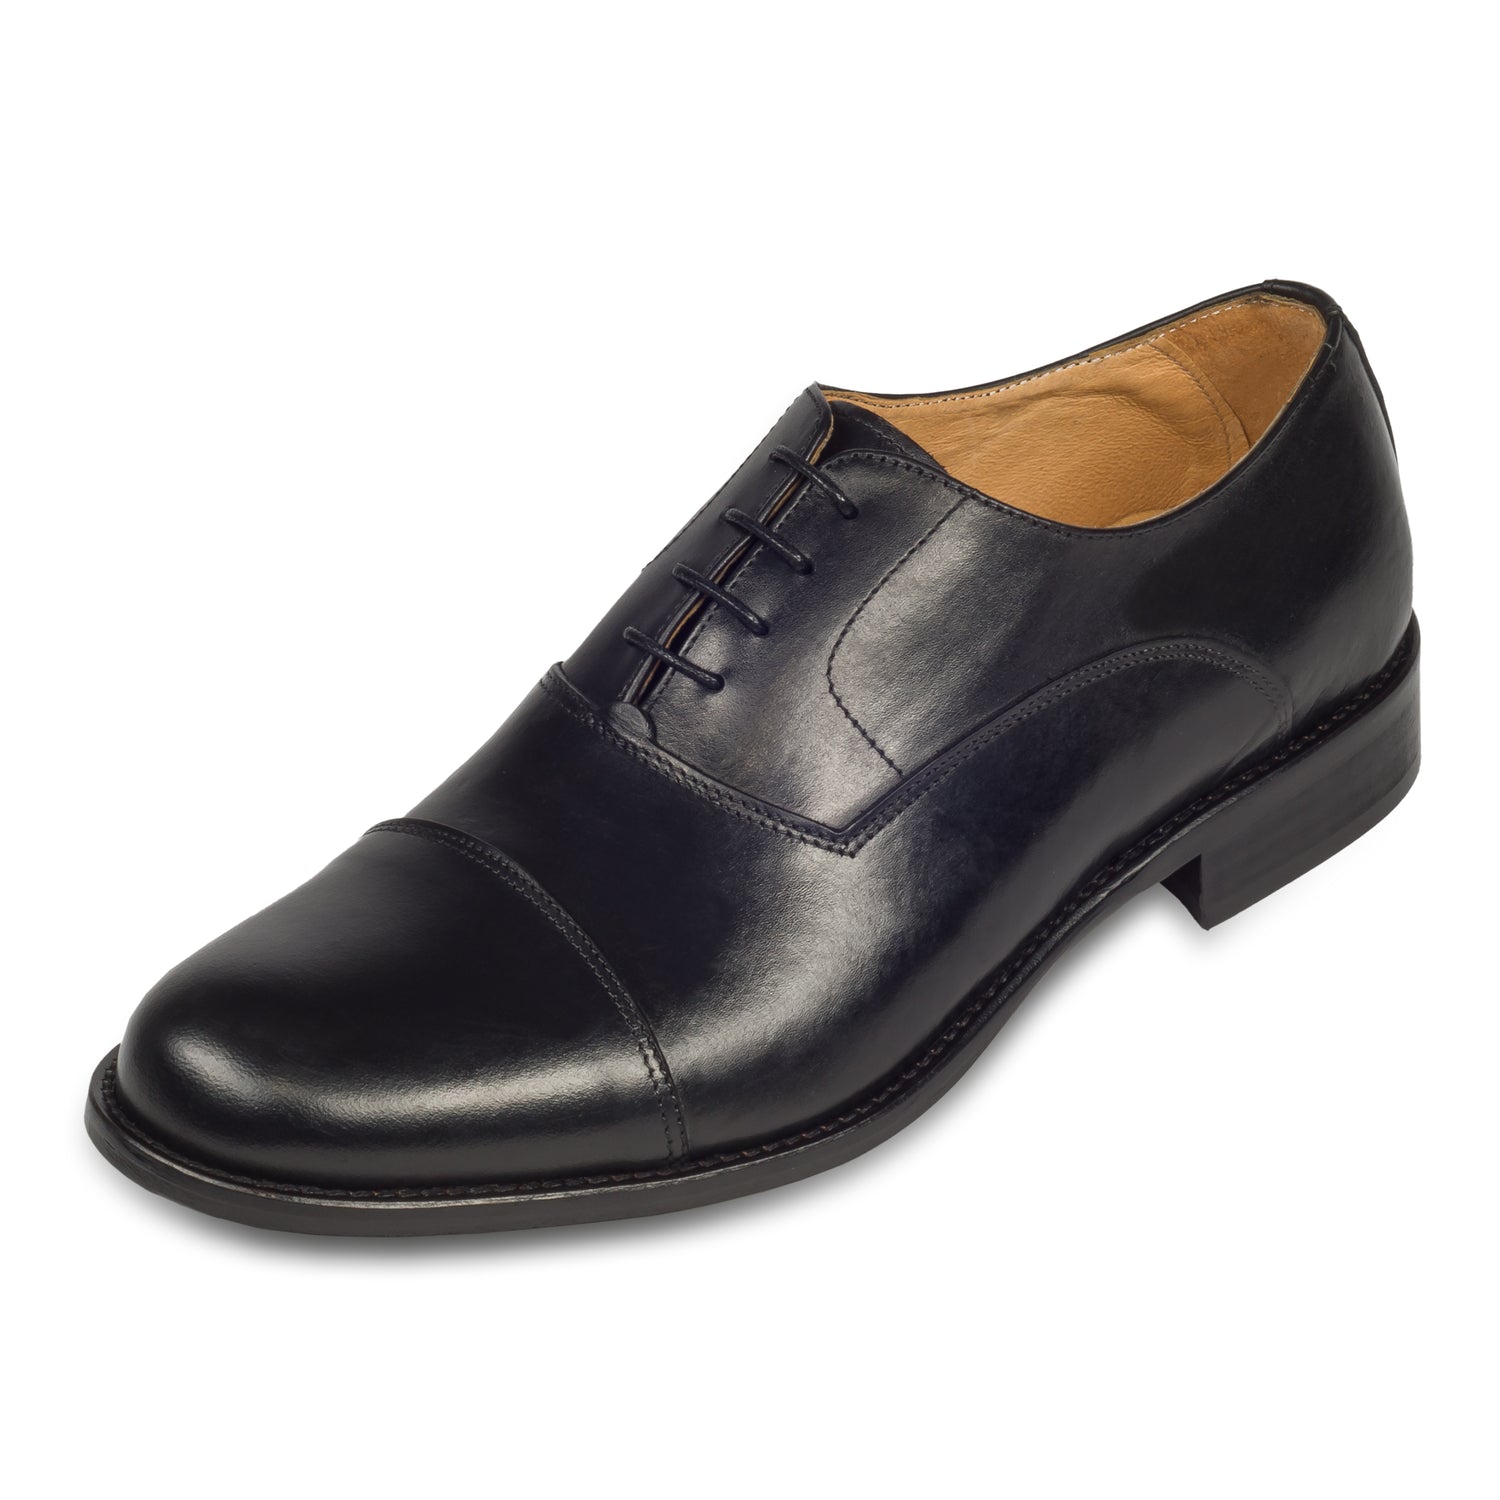 Exton - Italienische Herren Anzugschuhe, Captoe Oxford in schwarz. Aus Kalbsleder handgefertigt. Schräge Ansicht linker Schuh.